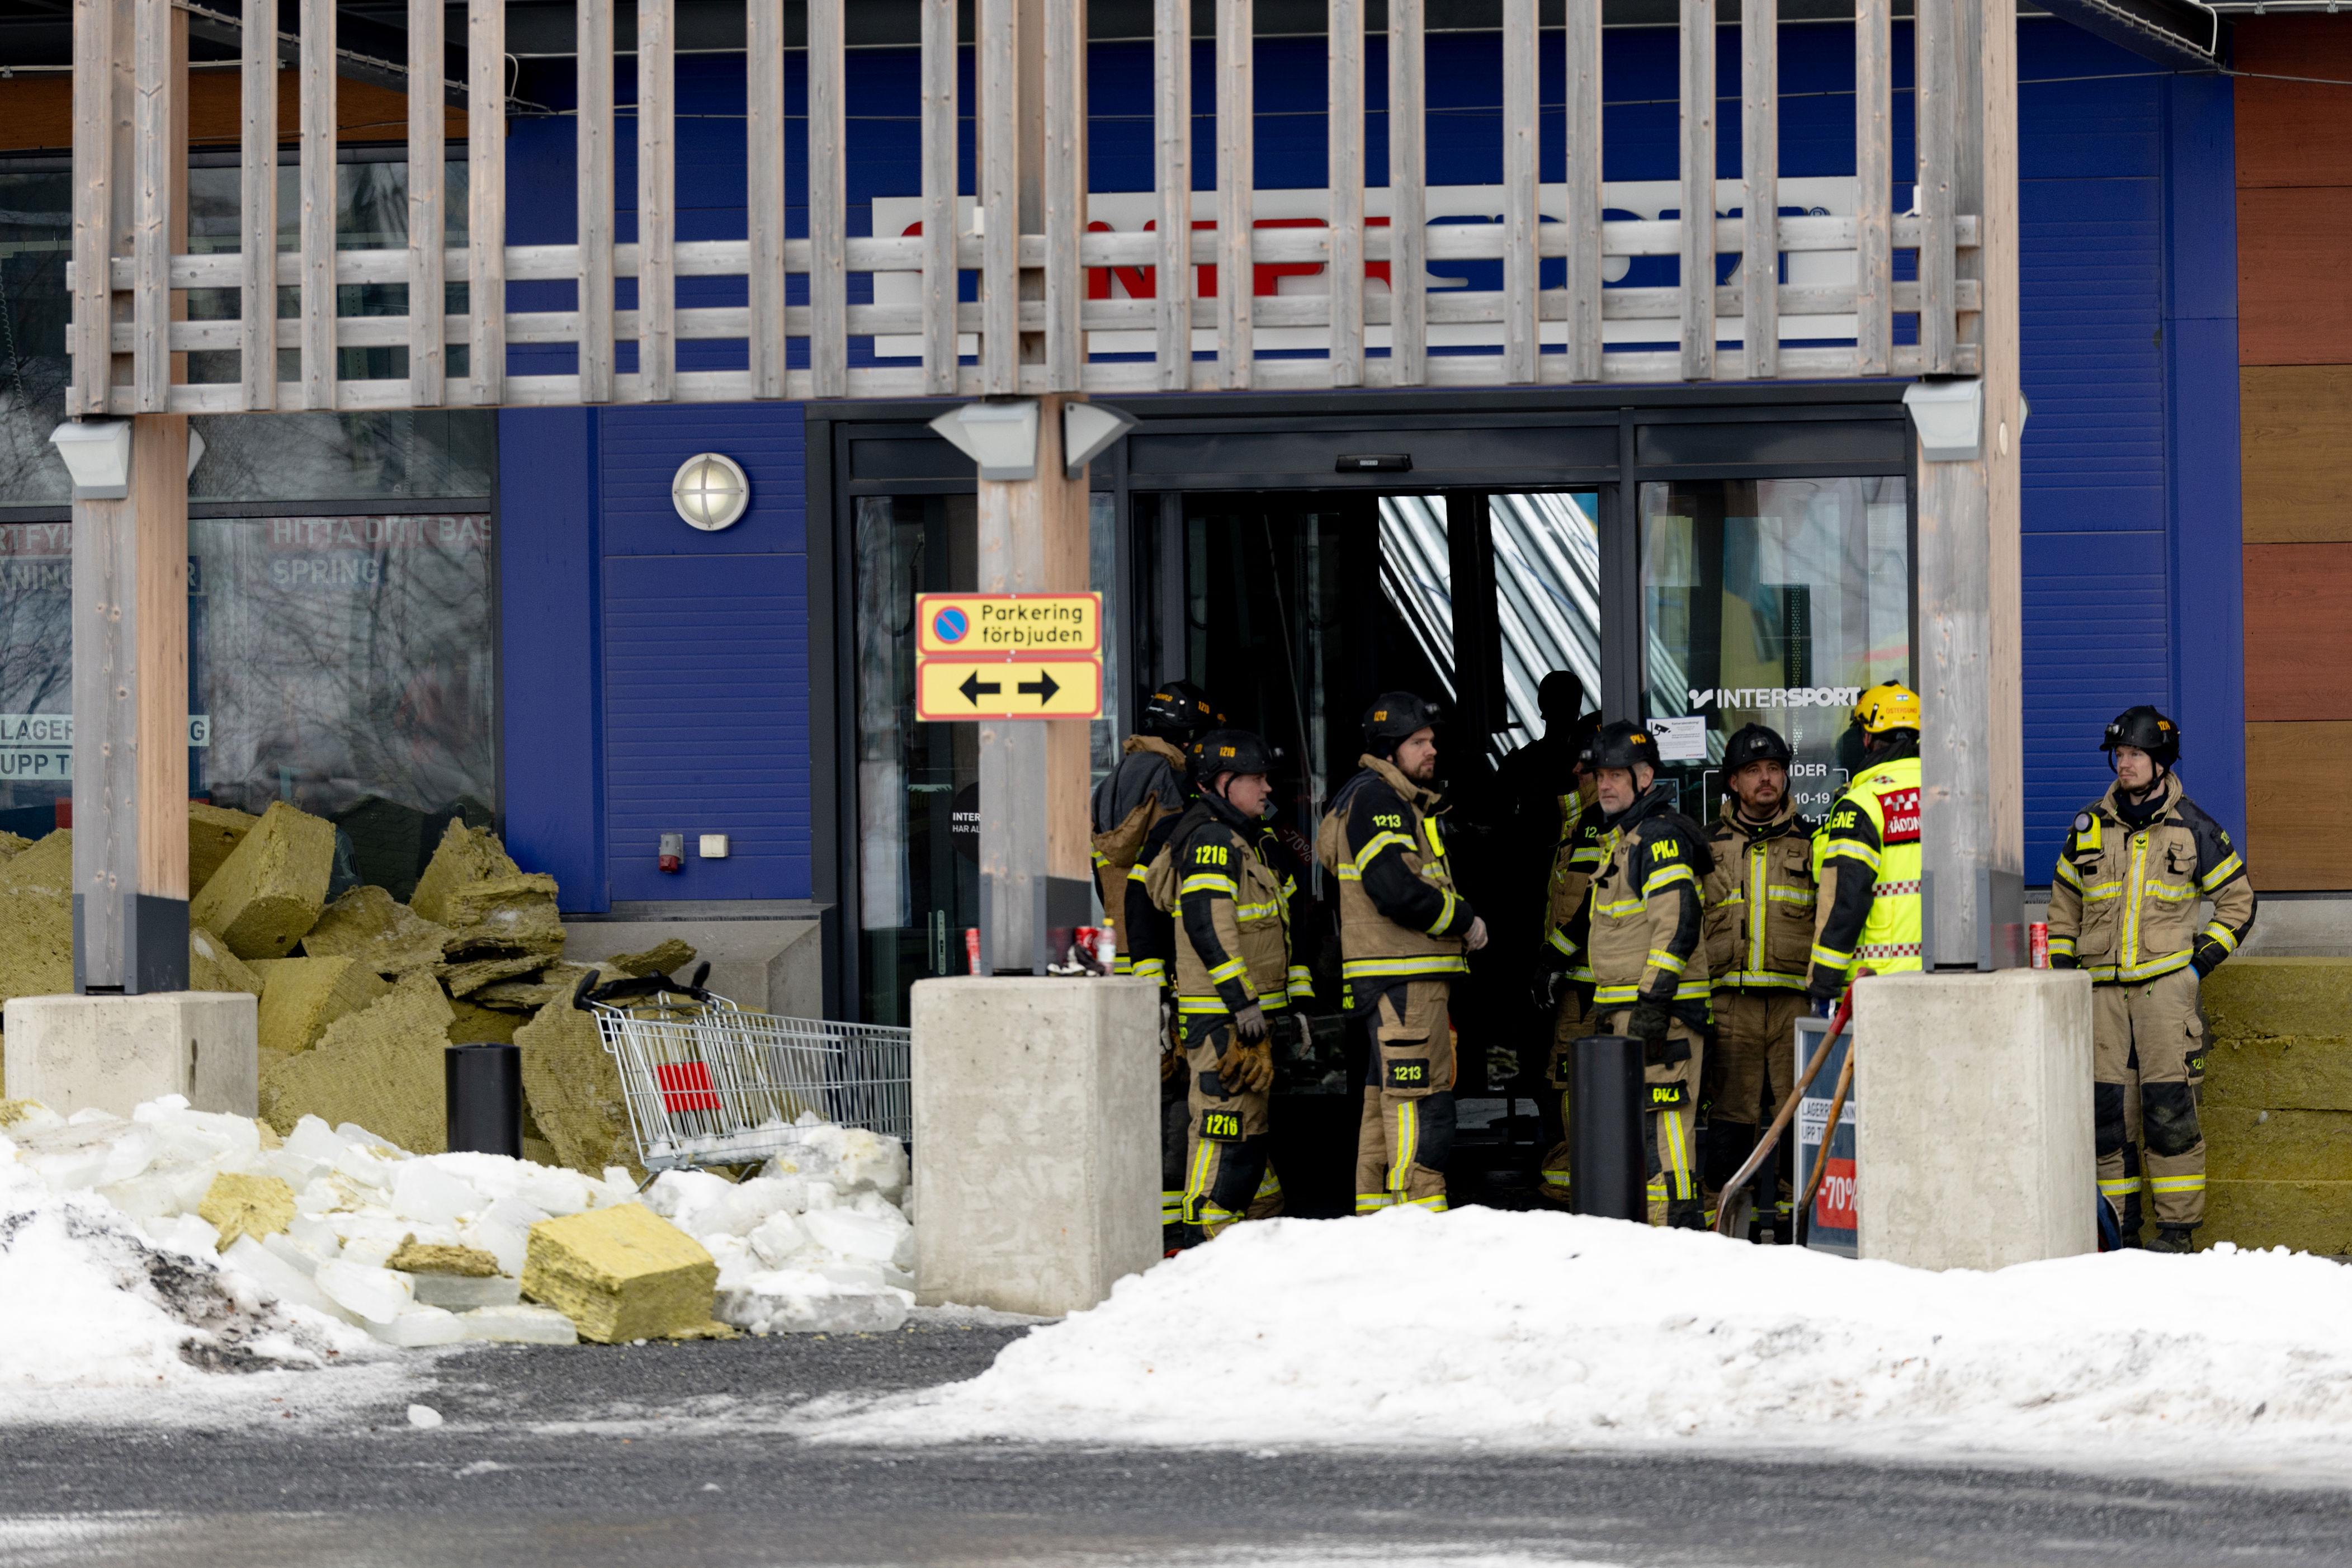 tak falt ned på kjøpesenter i östersund – norsk helikopter på vei